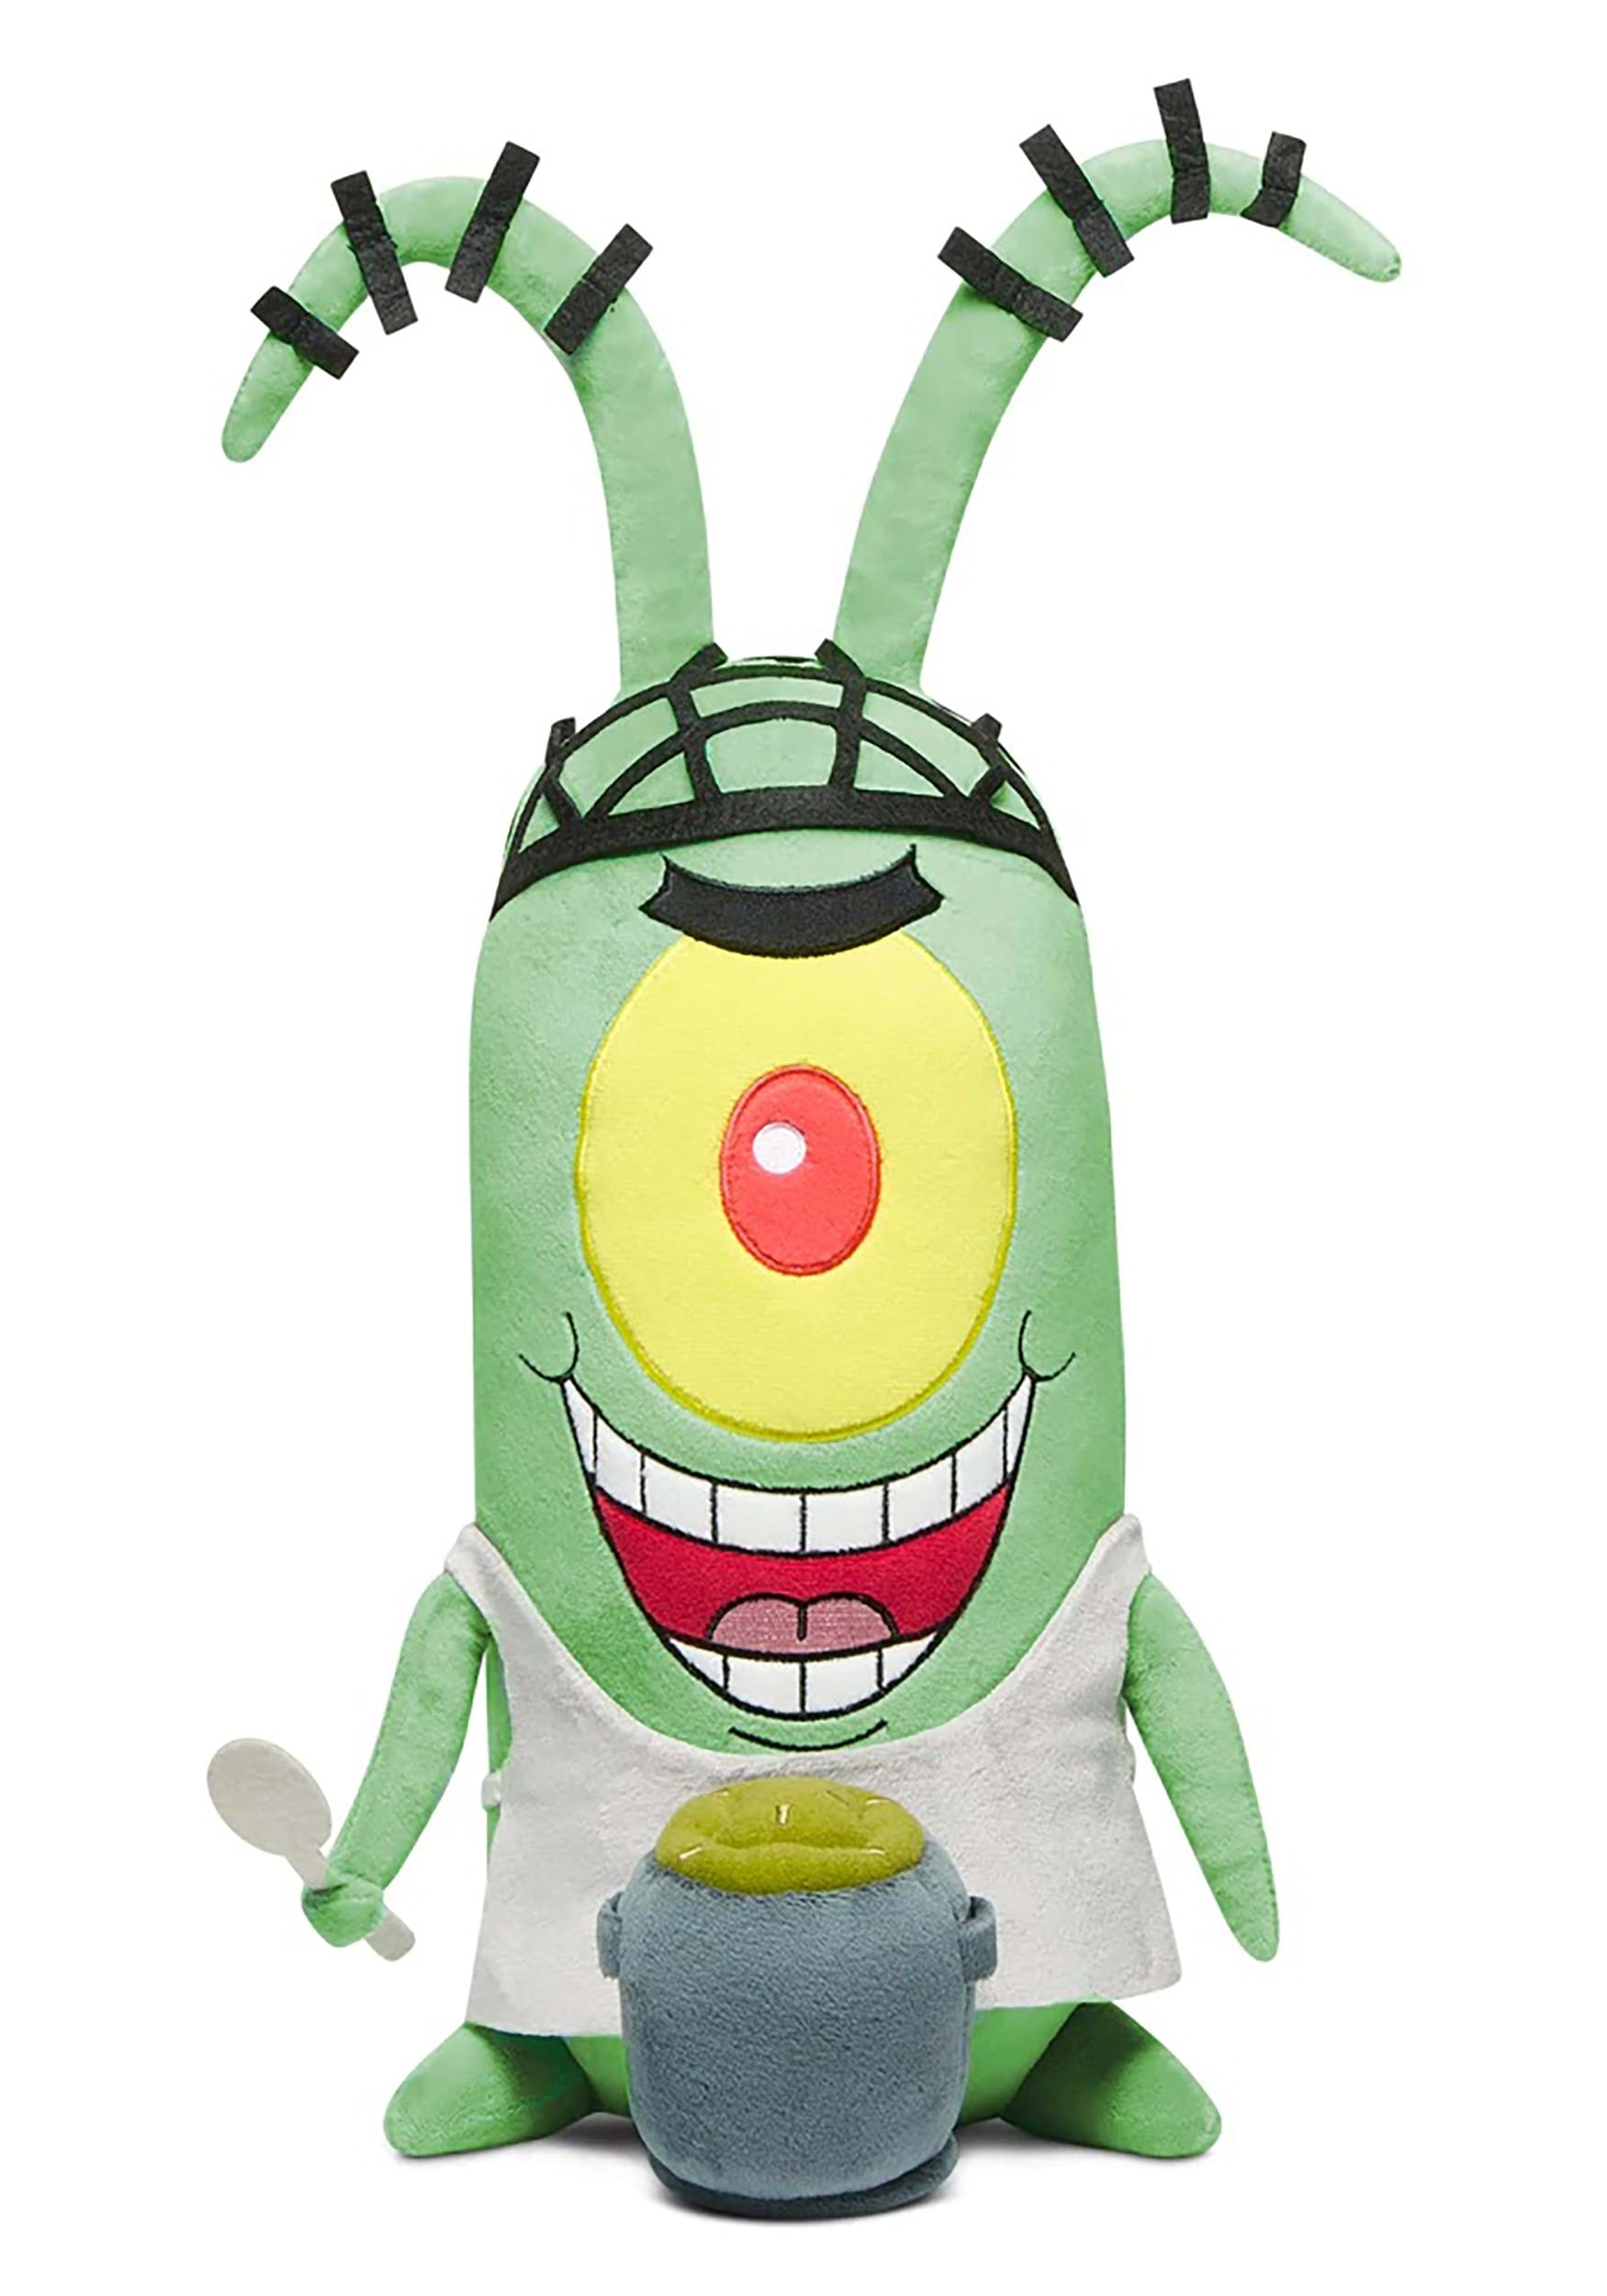 13" Kamp Koral HugMe Plankton Plush | Spongebob Squarepants Toys